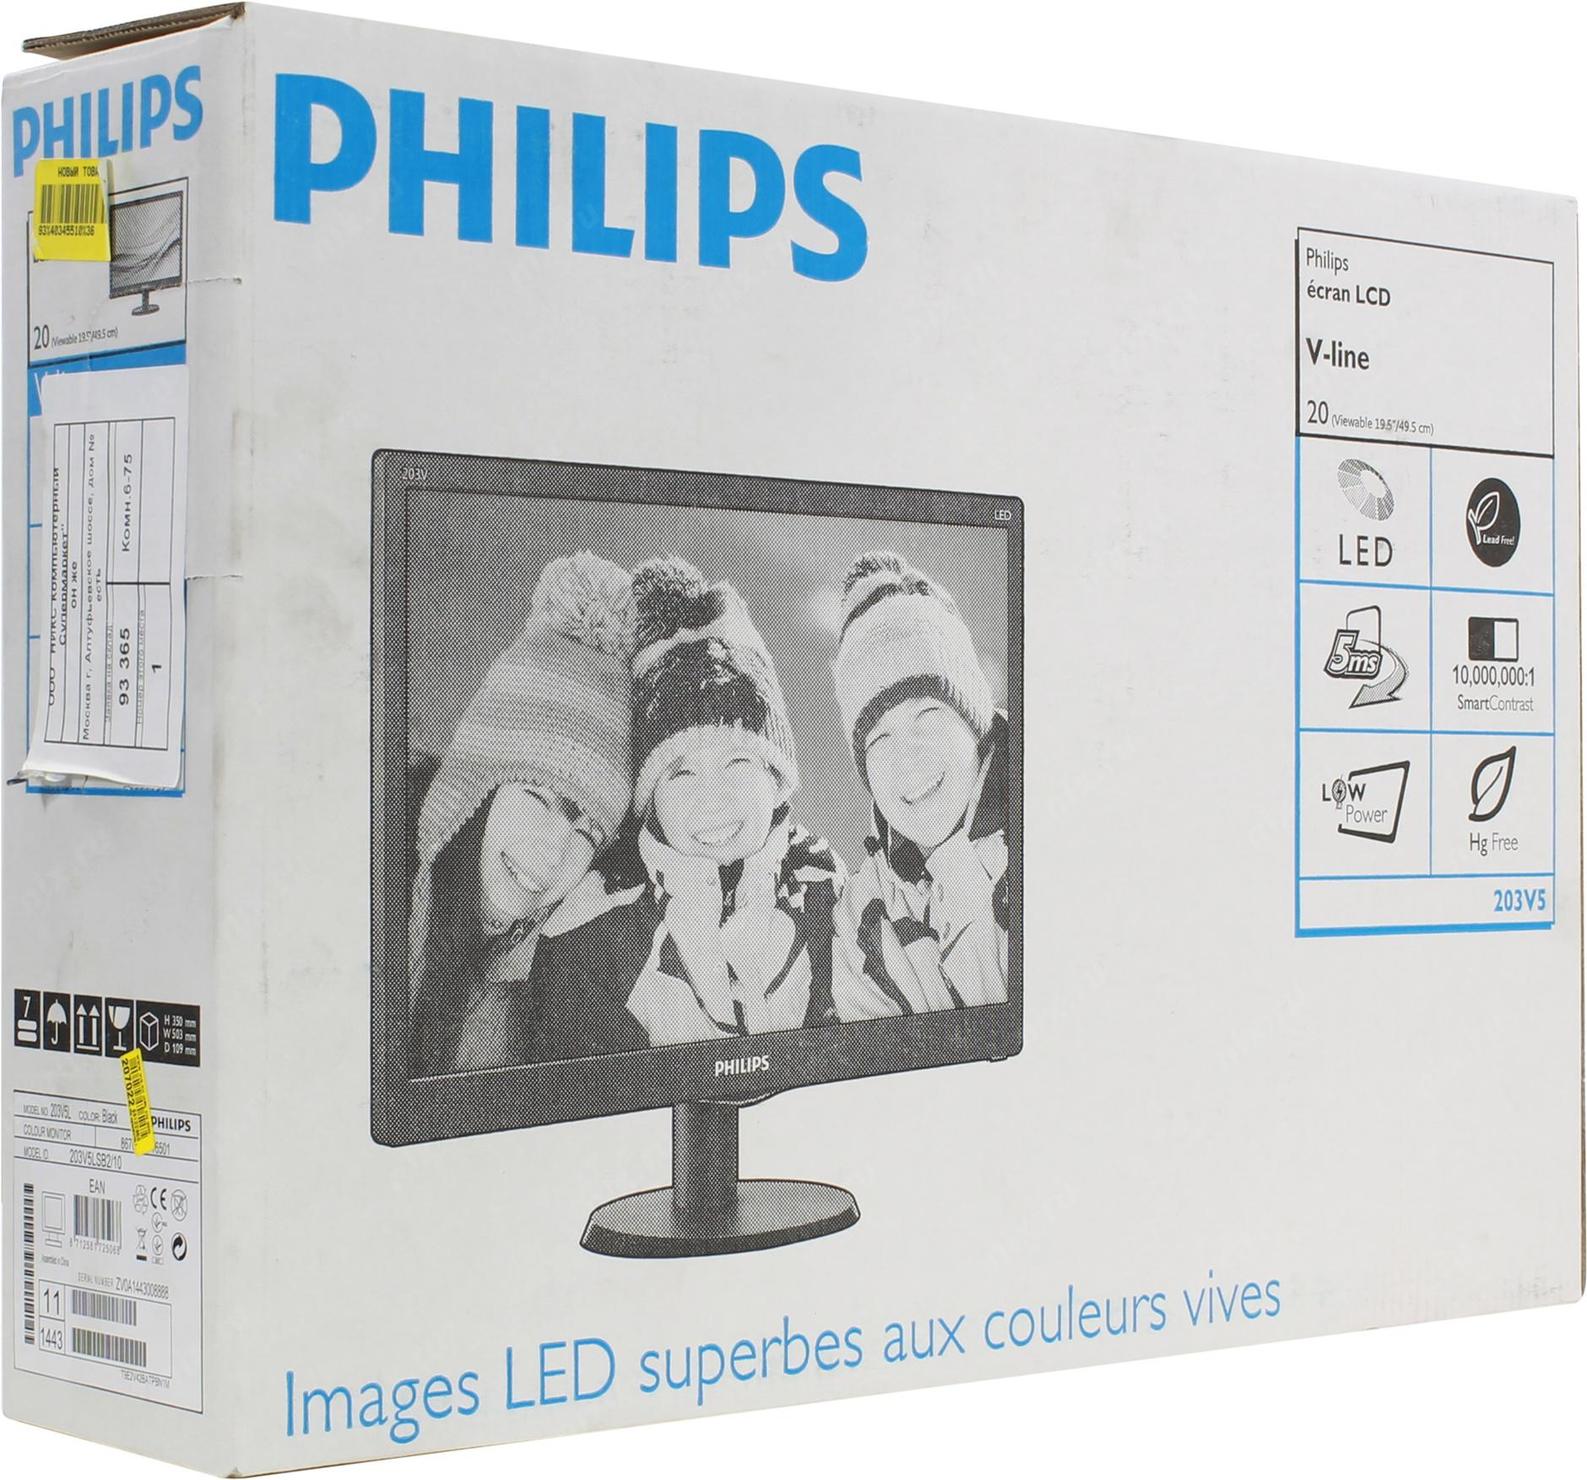 Описание филипс. Монитор Philips 203v. Philips 203v5 LCD. Монитор LCD 19" Philips 203v5lsb2. Philips 203v5 20.